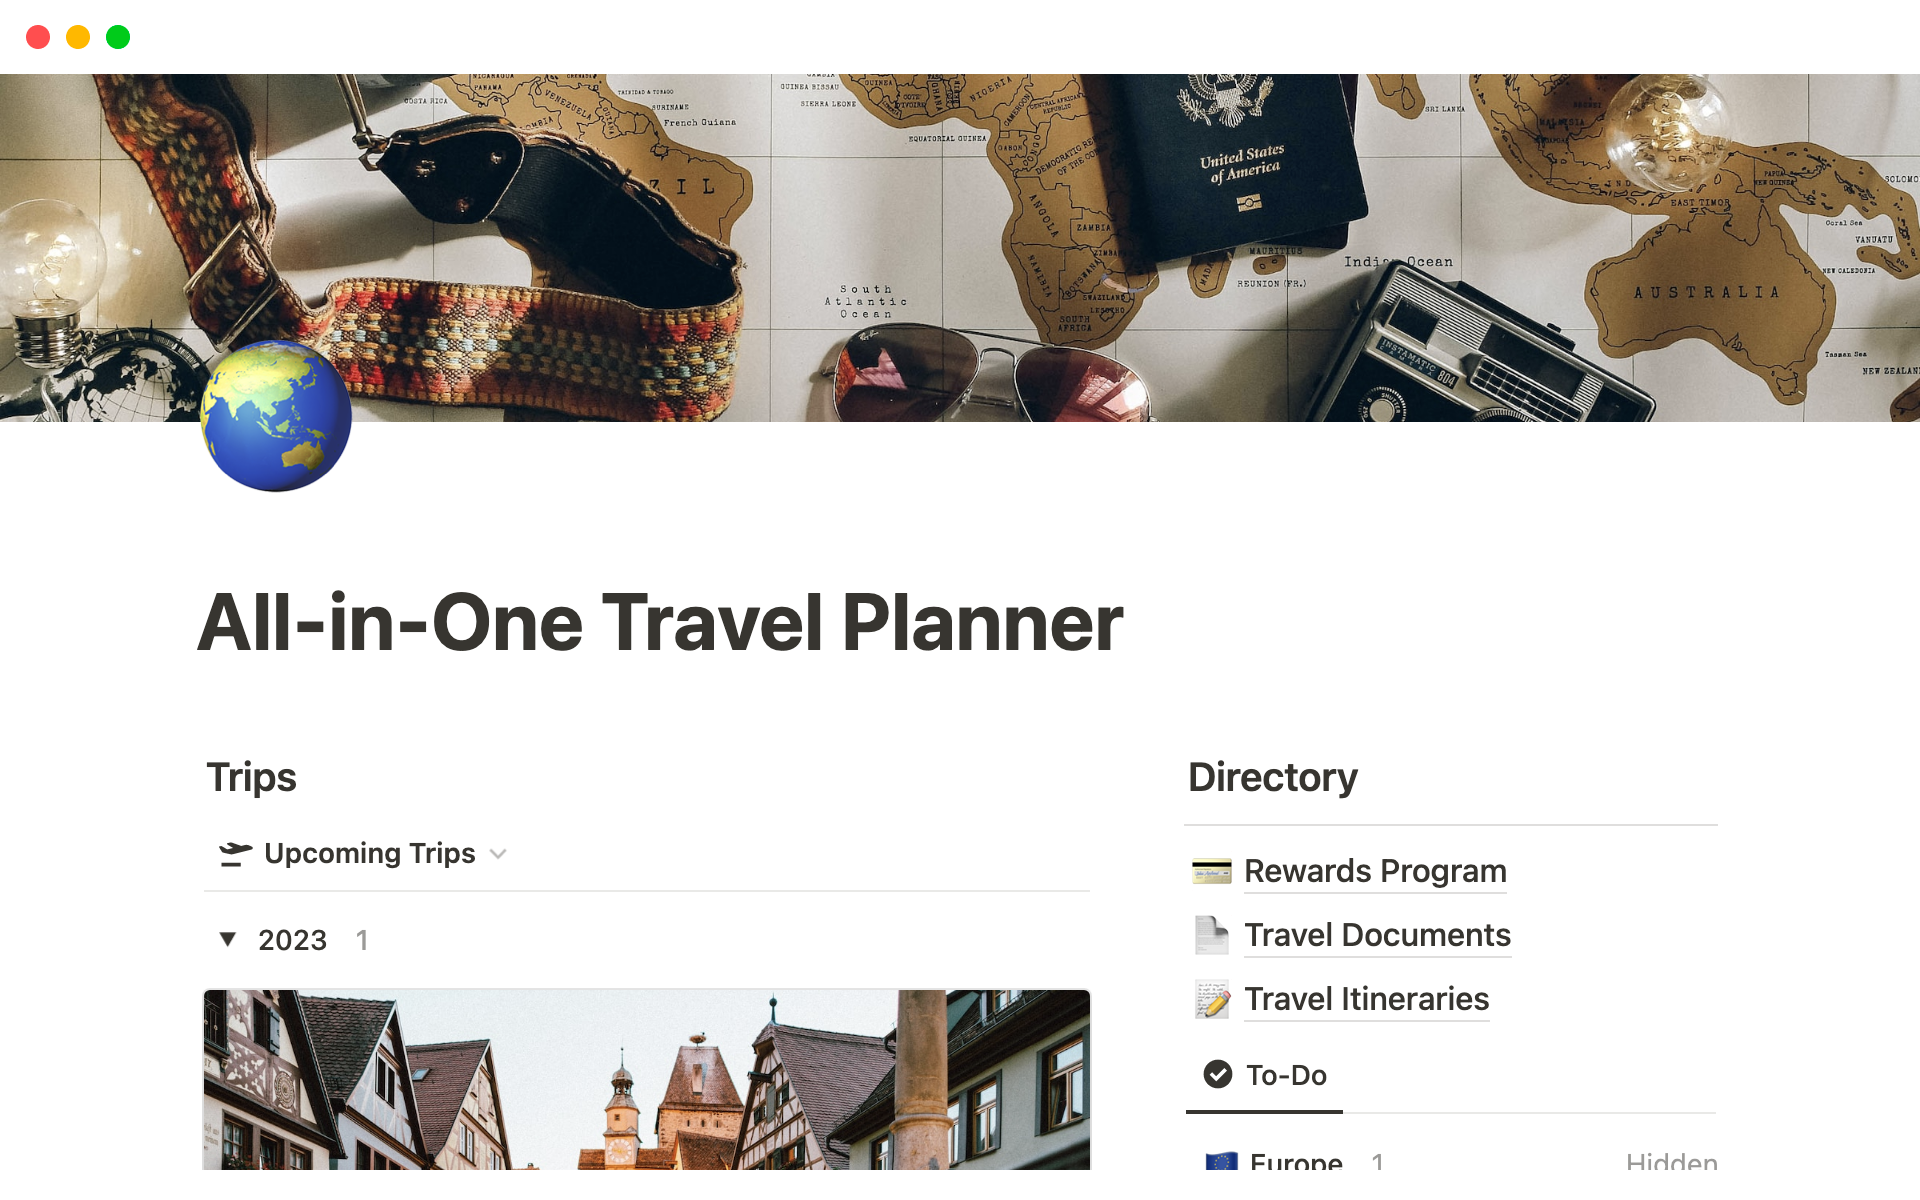 Uma prévia do modelo para All-in-One Travel Planner